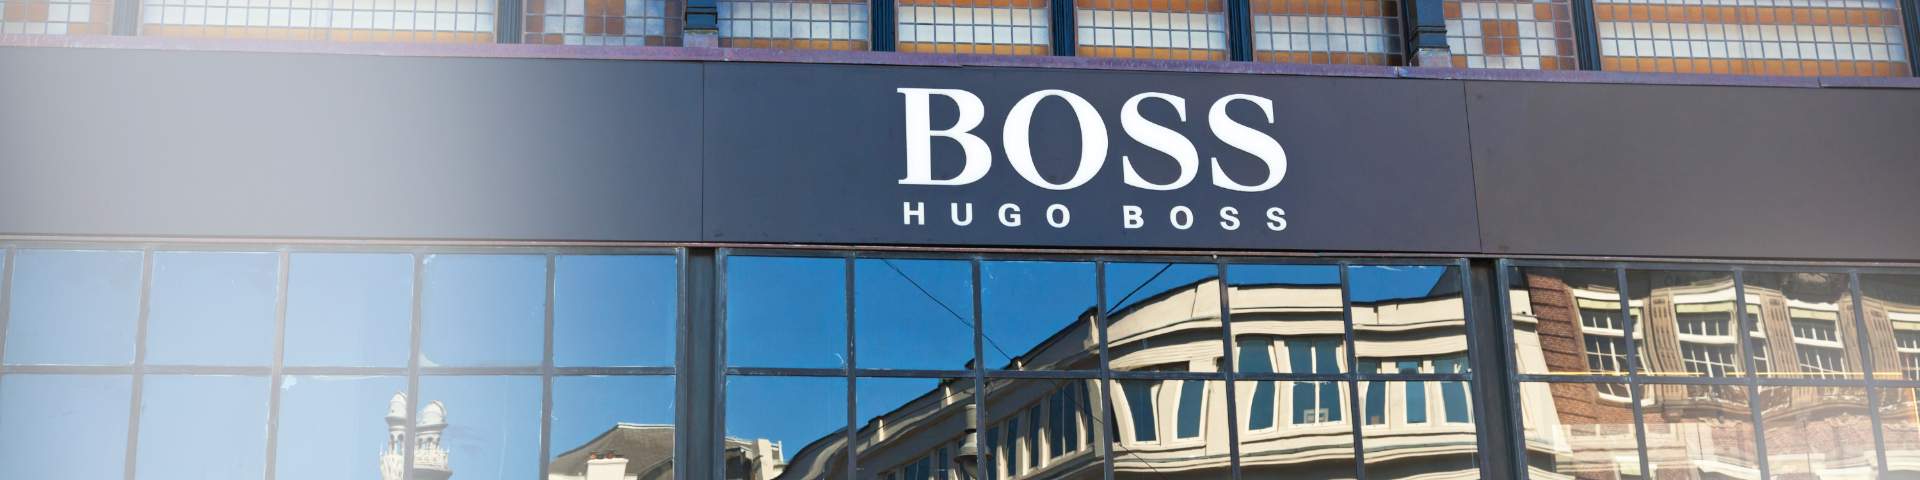 hugo boss b2b